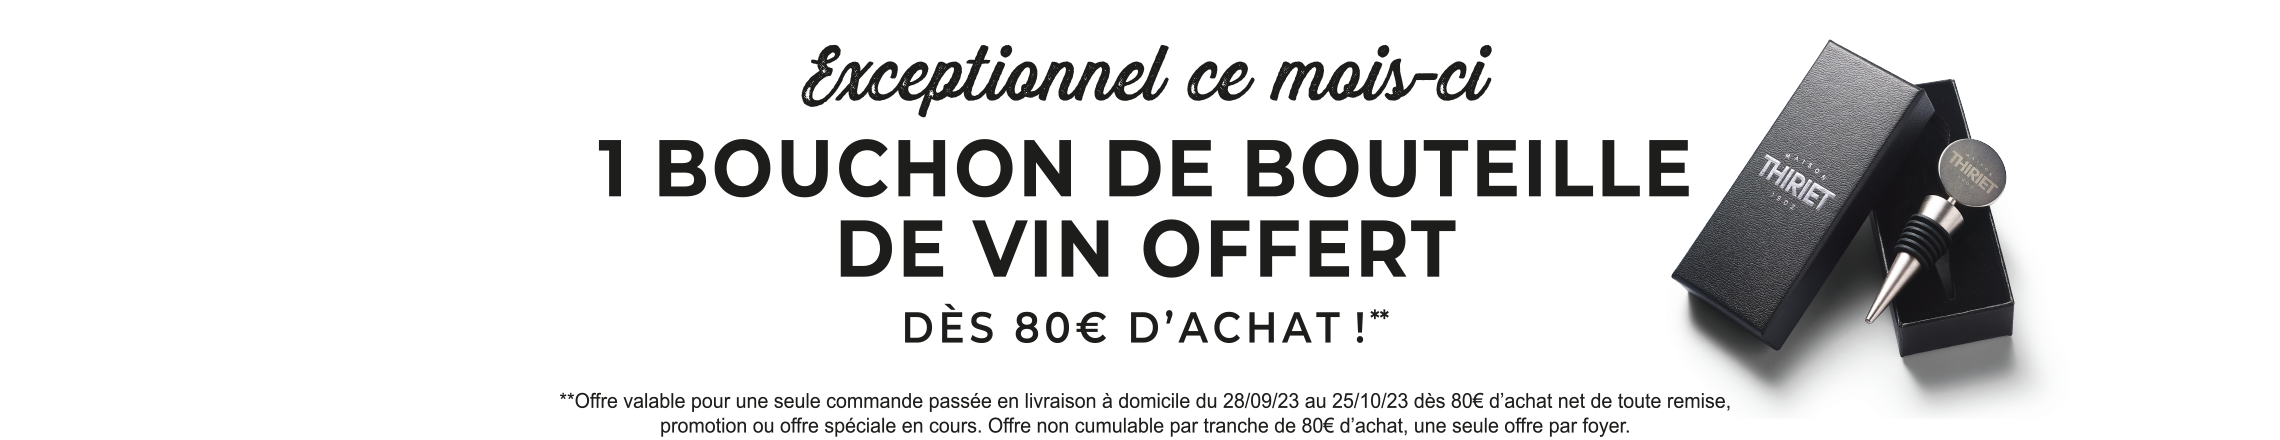 Profitez de l'offre exceptionnelle de la Maison Thiriet : un bouchon de bouteille de vin offert dès 80€ d'achat